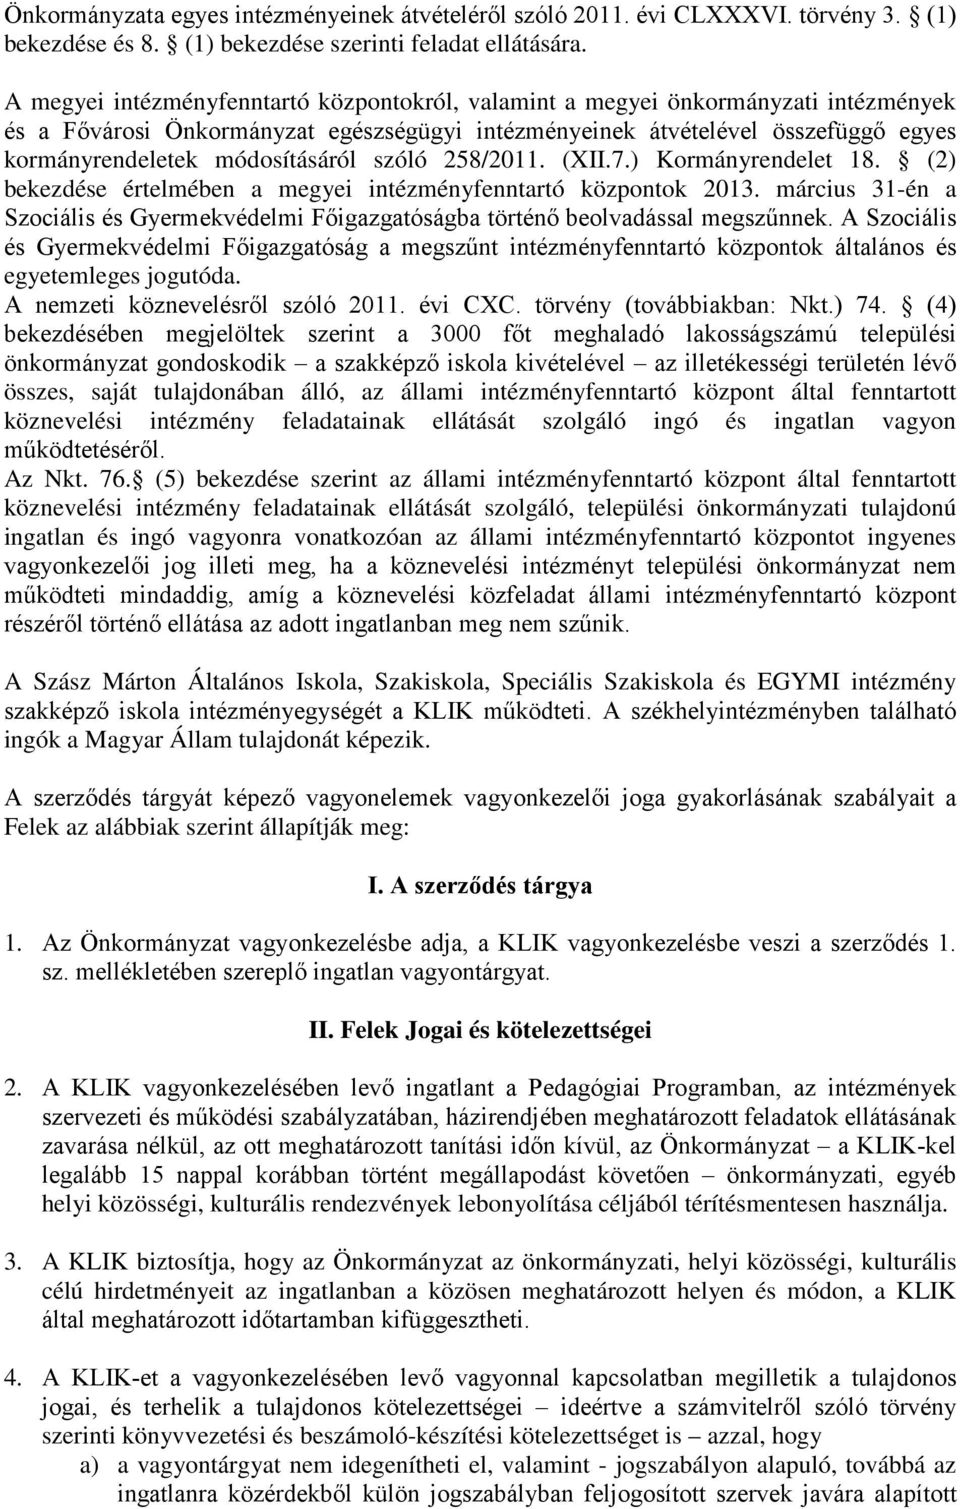 módosításáról szóló 258/2011. (XII.7.) Kormányrendelet 18. (2) bekezdése értelmében a megyei intézményfenntartó központok 2013.